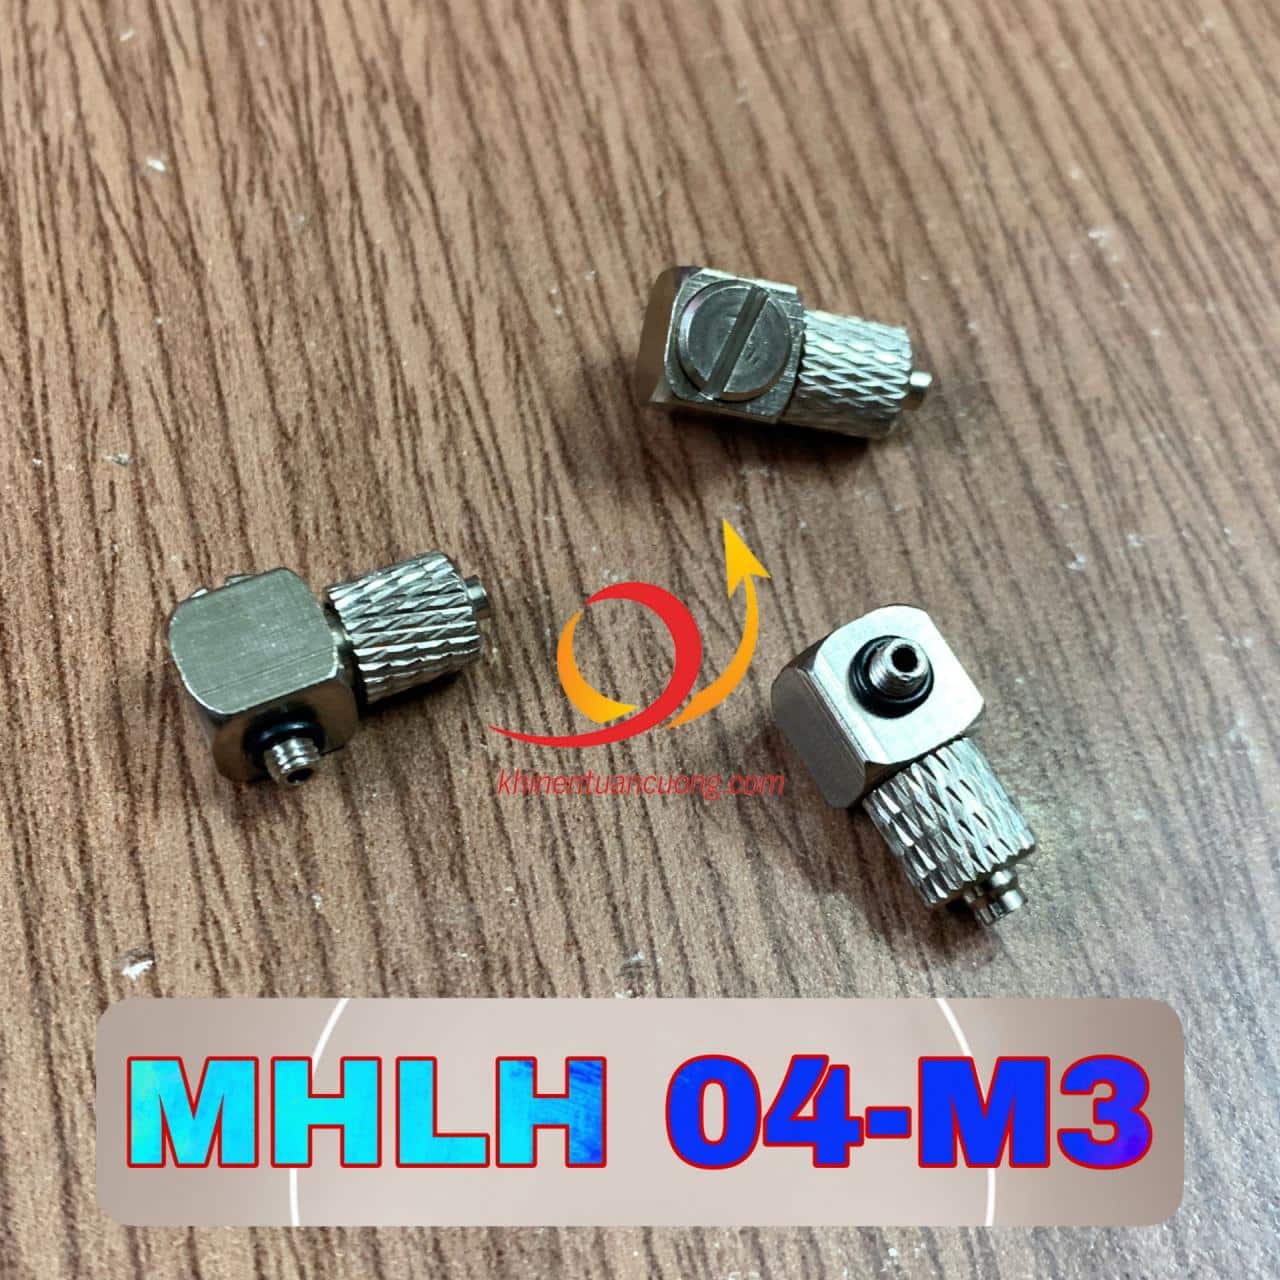 MHLH 04-M3 là chiếc cút ren góc có bắt vít để giữ dây hơi phi 4 và phần ren là M3. MHLH 04-M3 sẽ rất phù hợp với những chiếc xylanh di chuyển nhiều, cần sự chắc chắn ở đầu ngậm dây hơi.